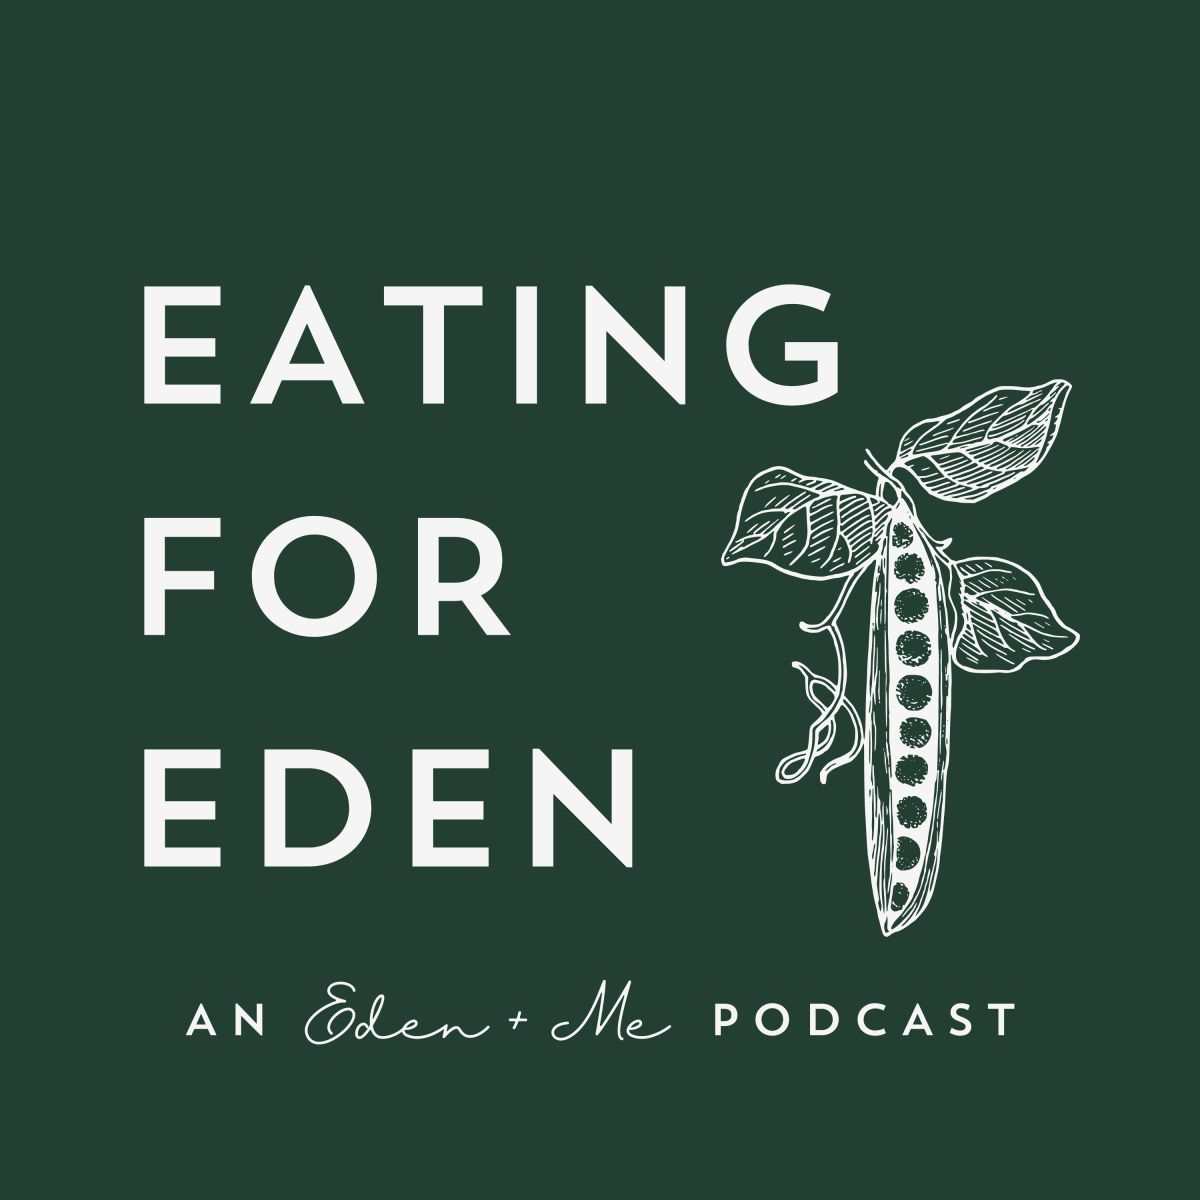 New Podcast: Eating for Eden